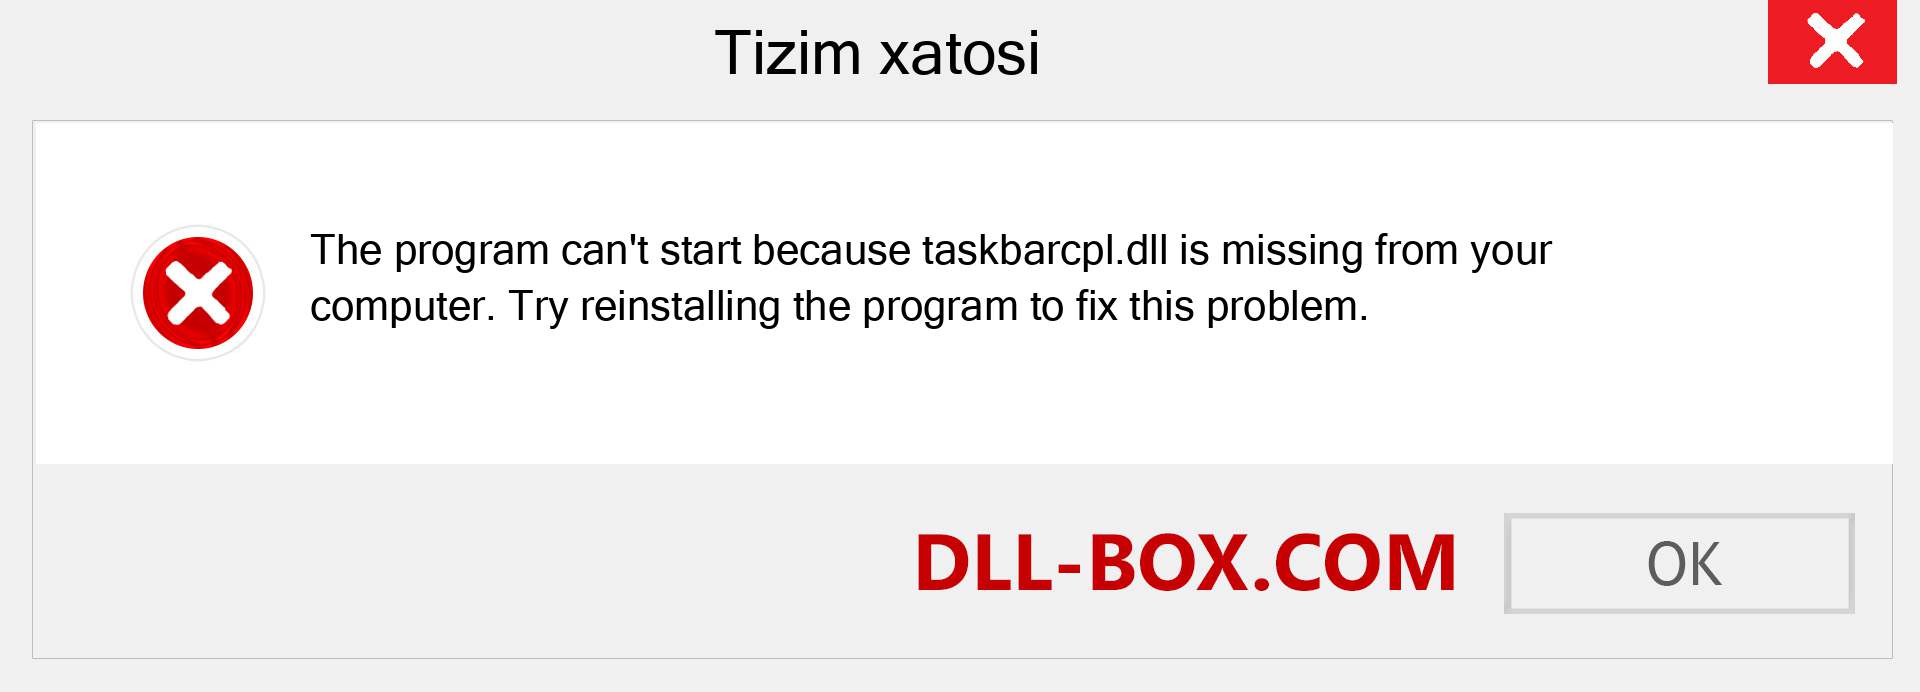 taskbarcpl.dll fayli yo'qolganmi?. Windows 7, 8, 10 uchun yuklab olish - Windowsda taskbarcpl dll etishmayotgan xatoni tuzating, rasmlar, rasmlar